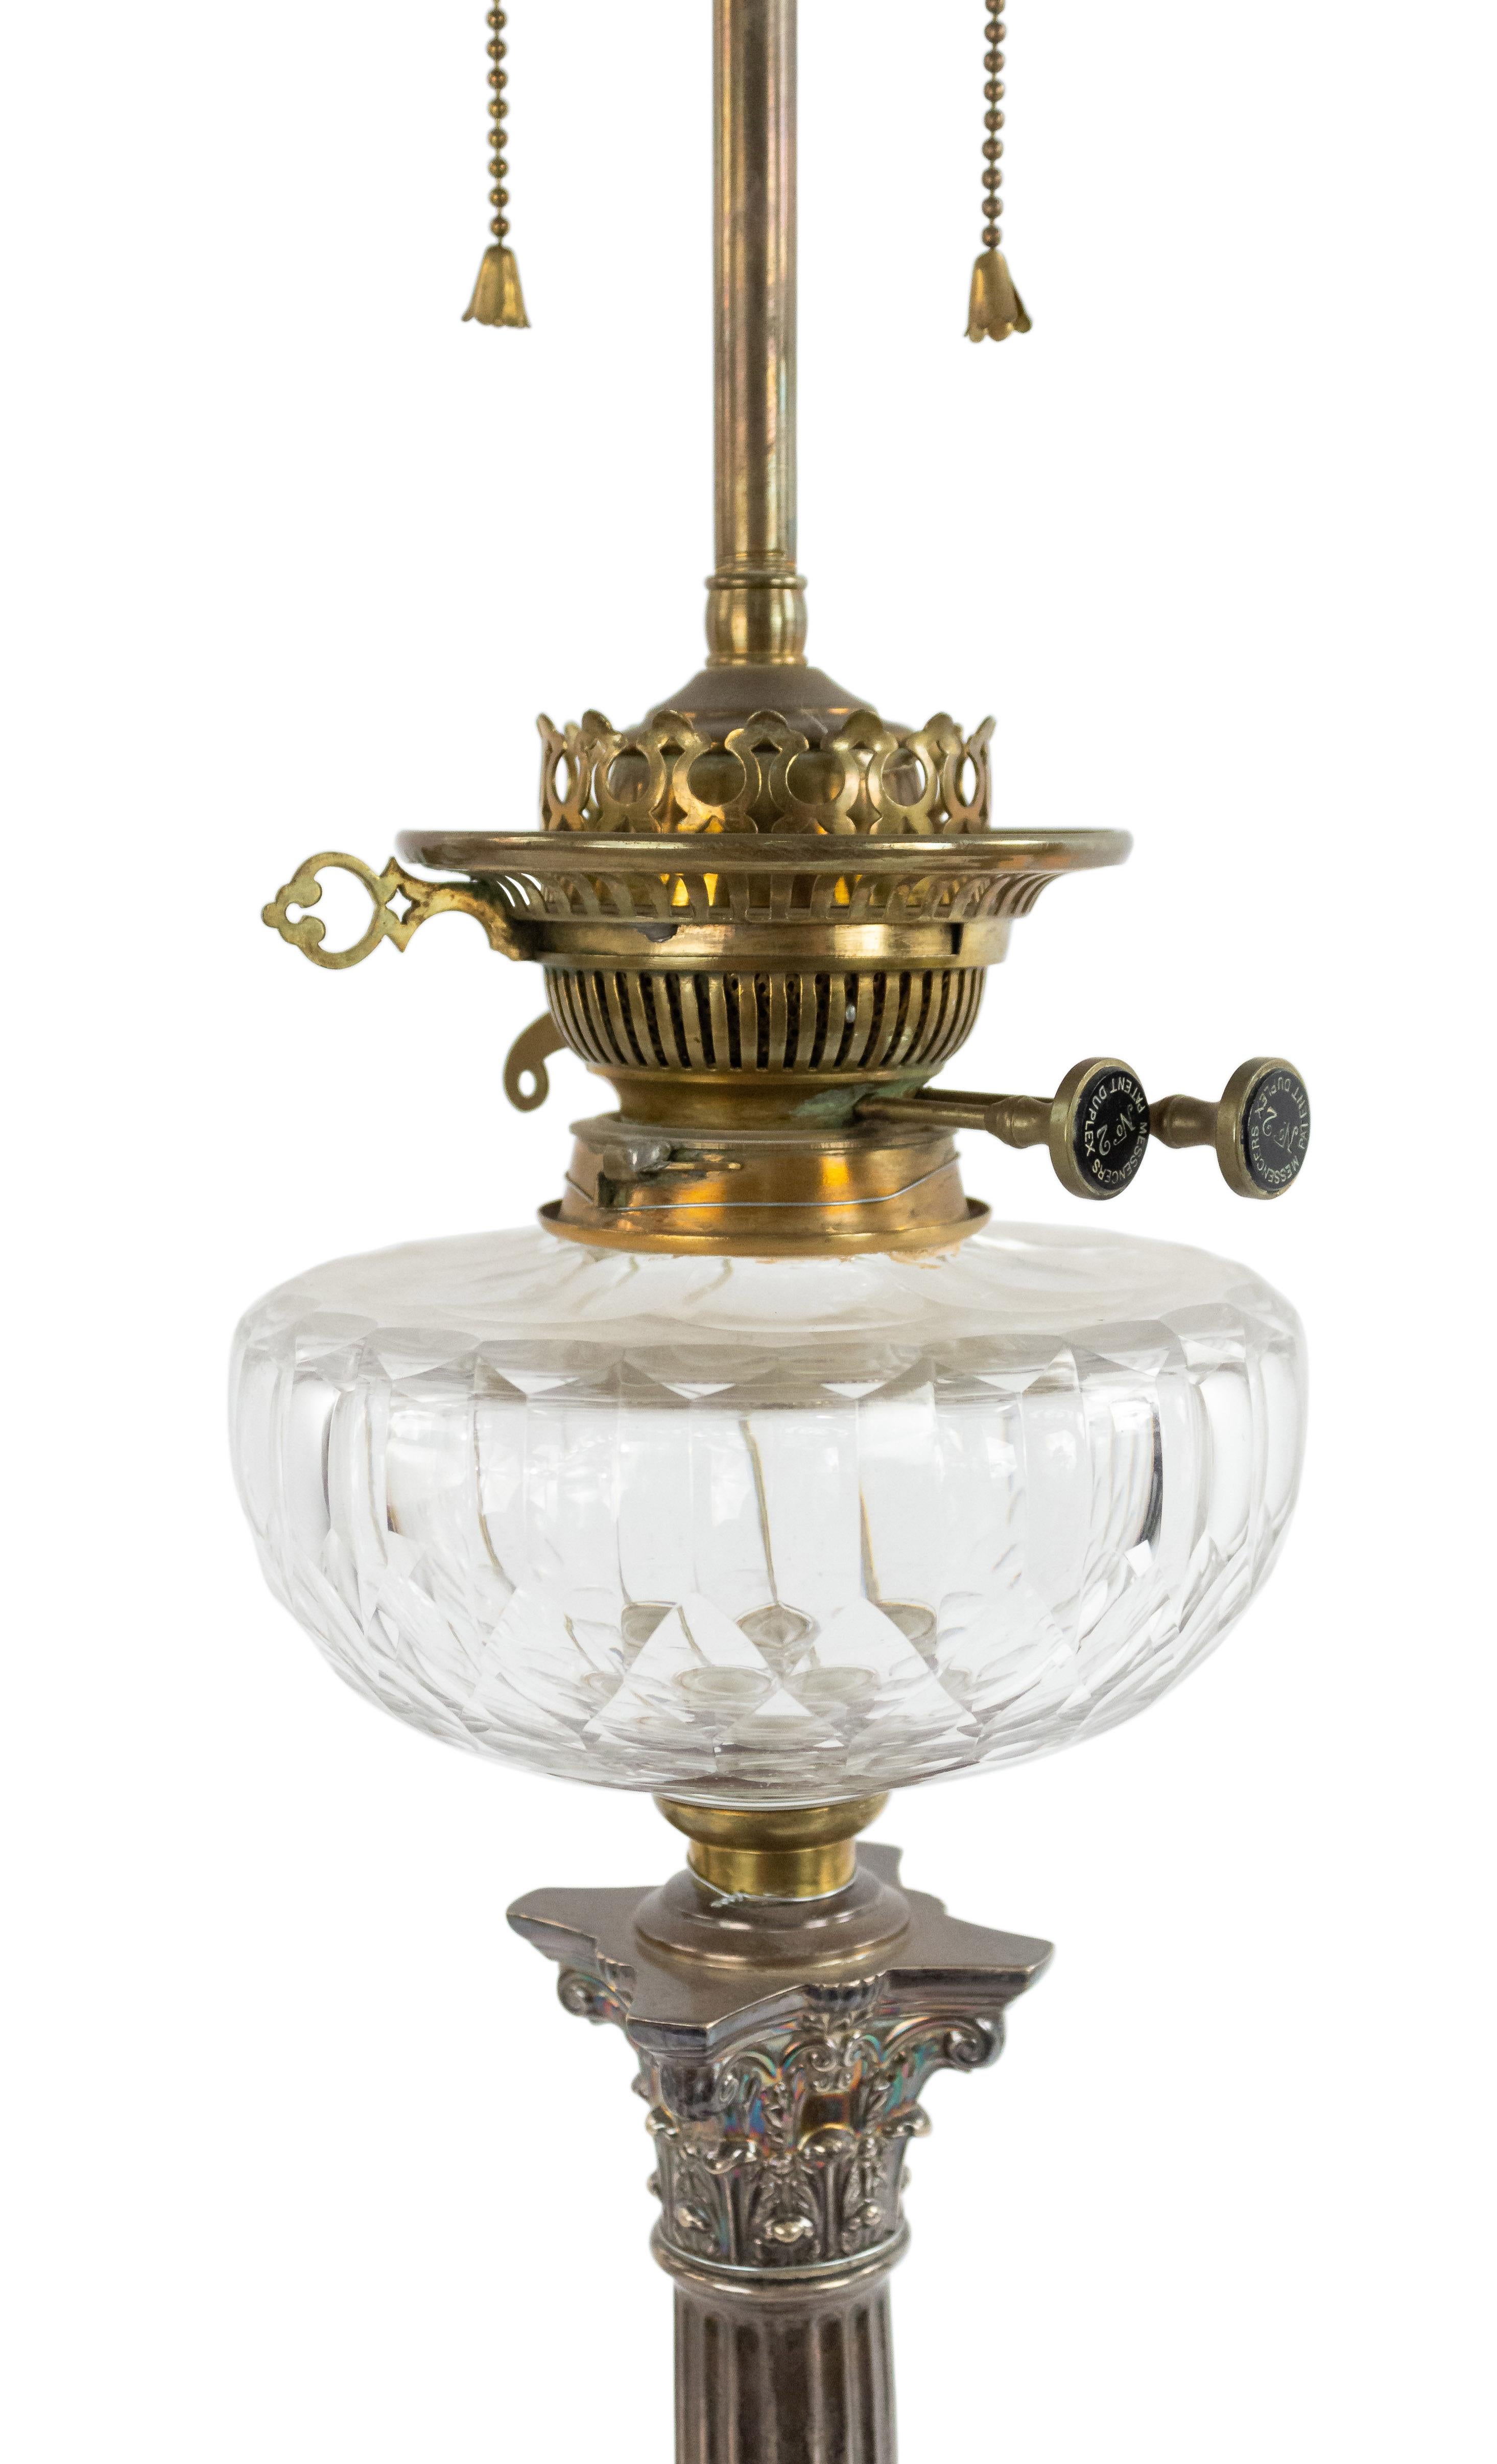 Lampe de table à colonne corinthienne de style Adam anglais (19e siècle) en métal argenté avec fontaine en cristal.
